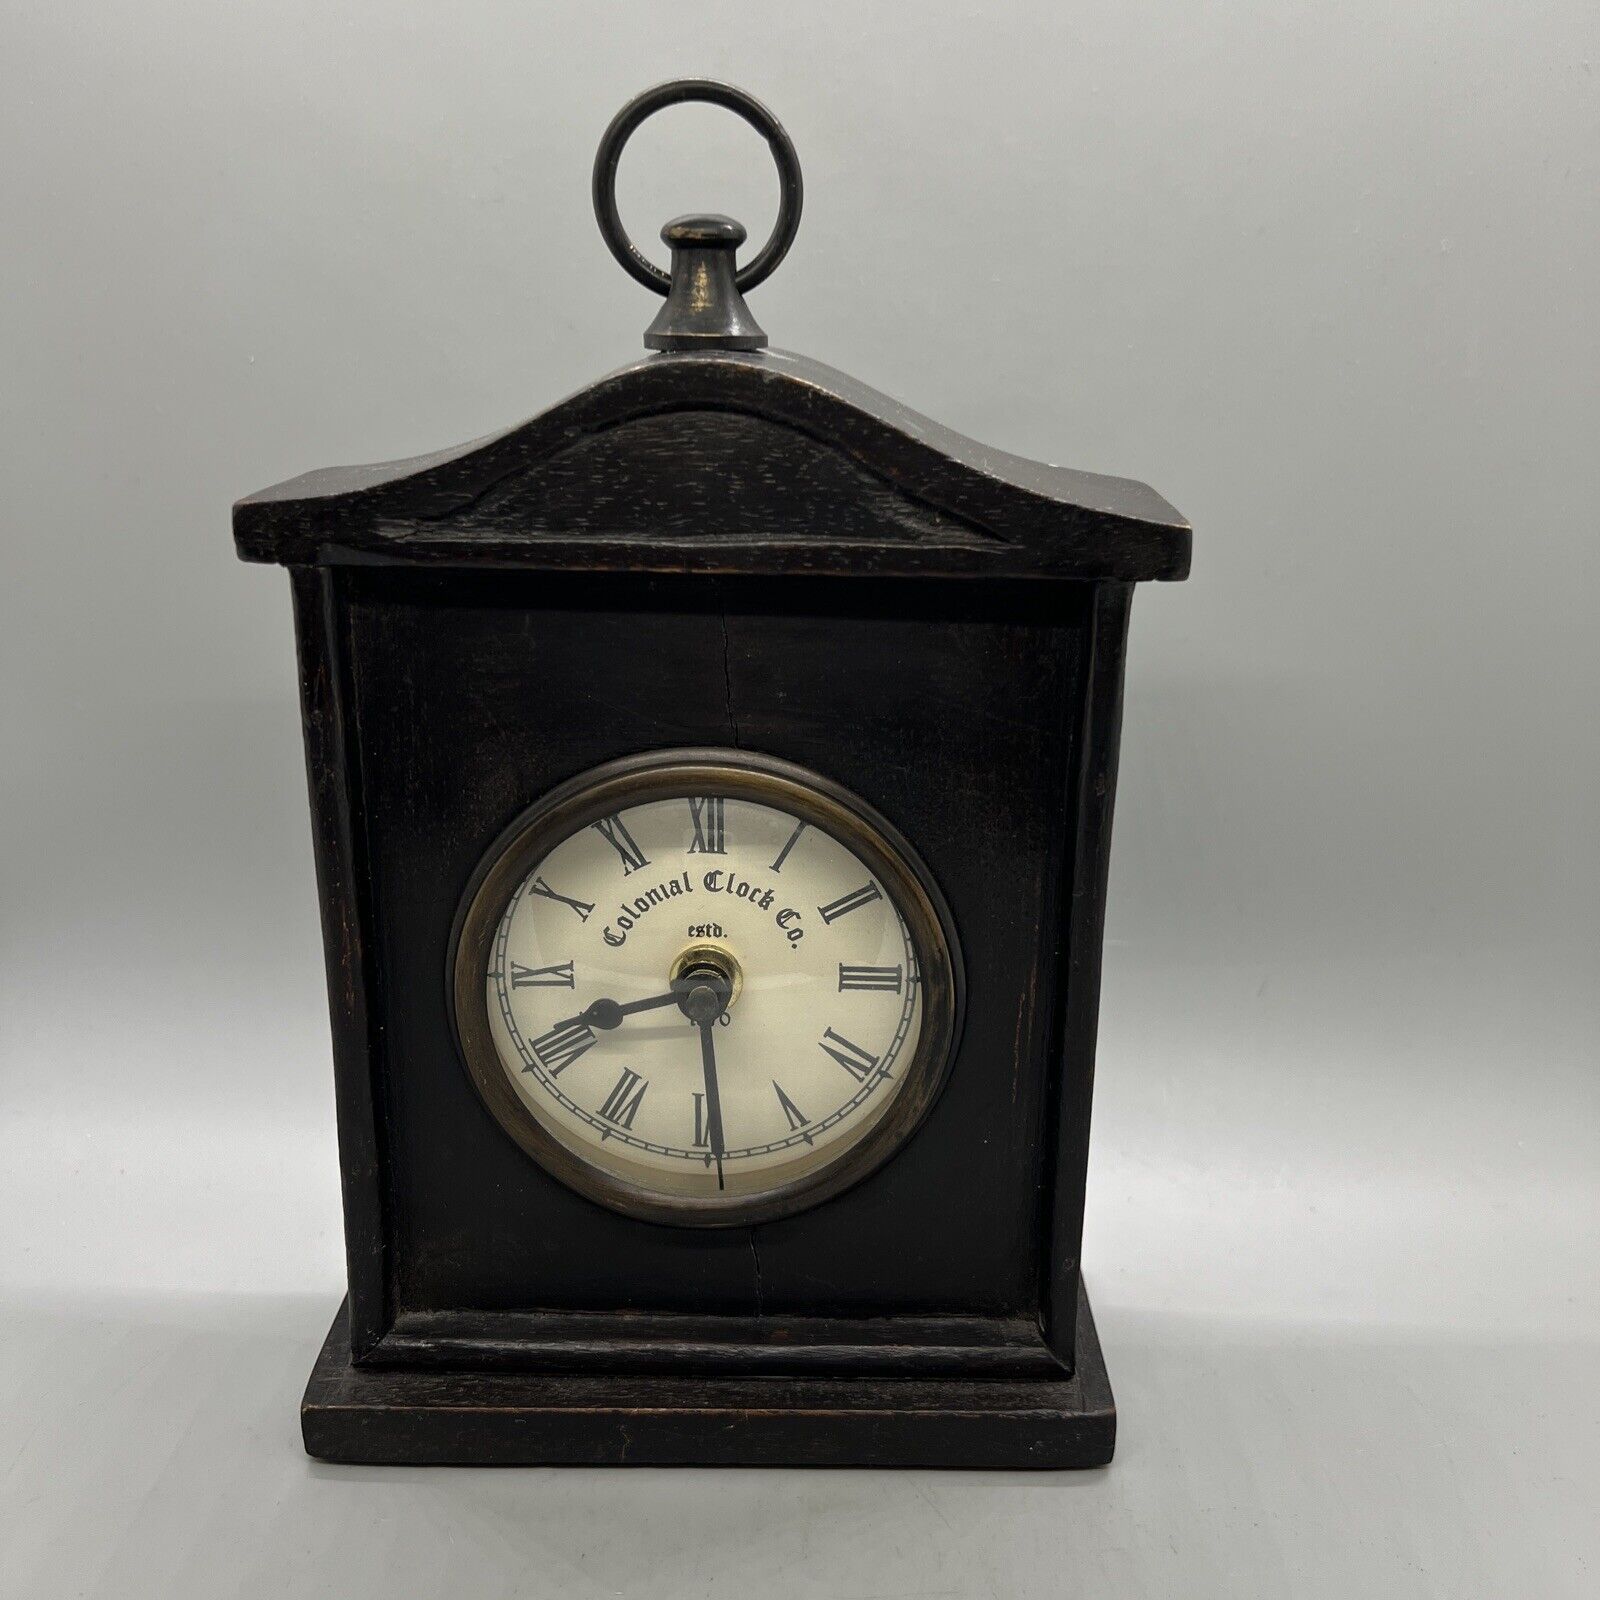 Wooden Mantle Clock Quartz 7x5.25x2.25” Dark Wood Carved